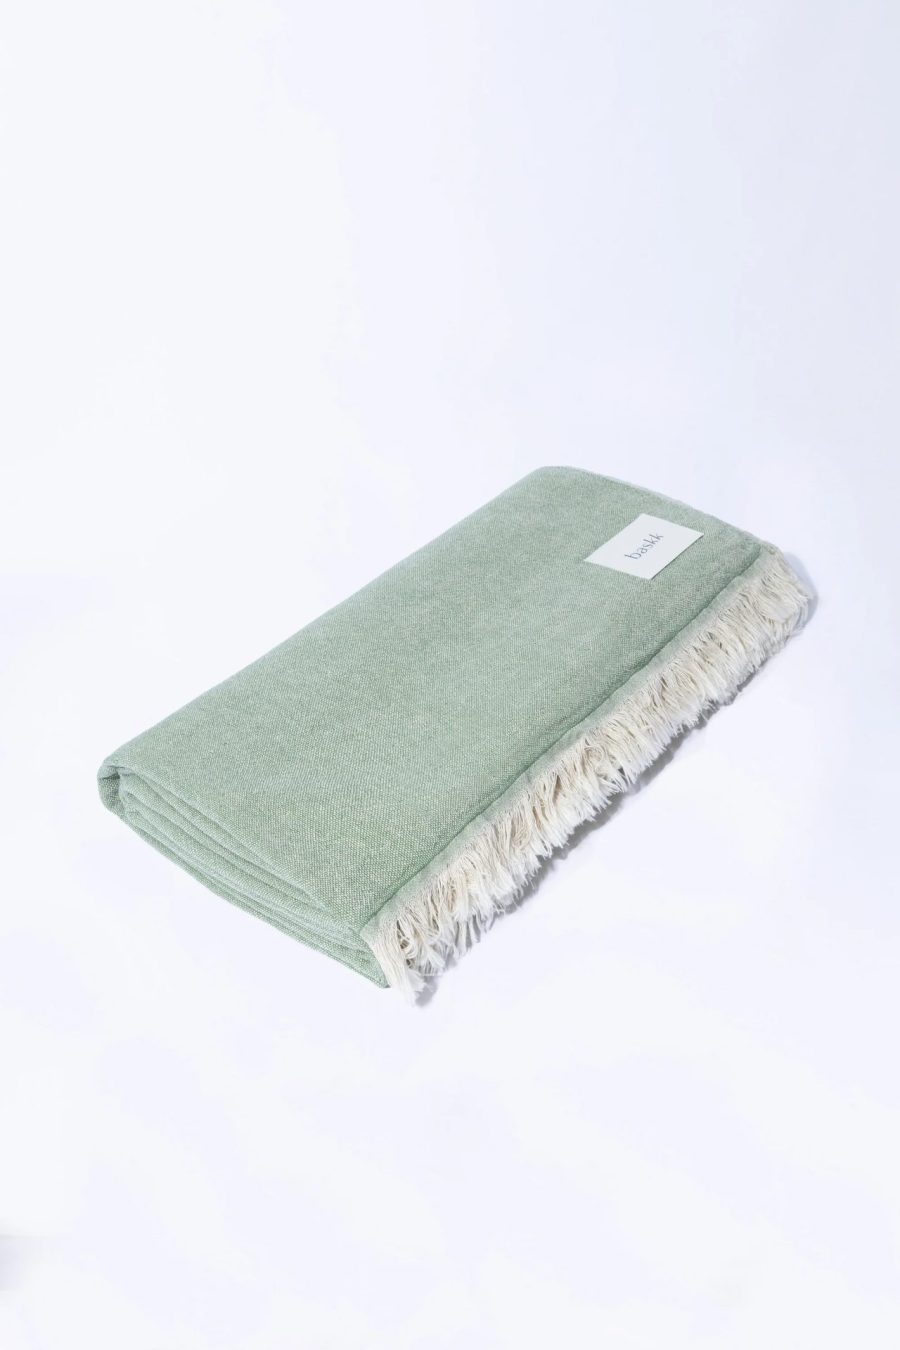 baskk everyday blanket aspen